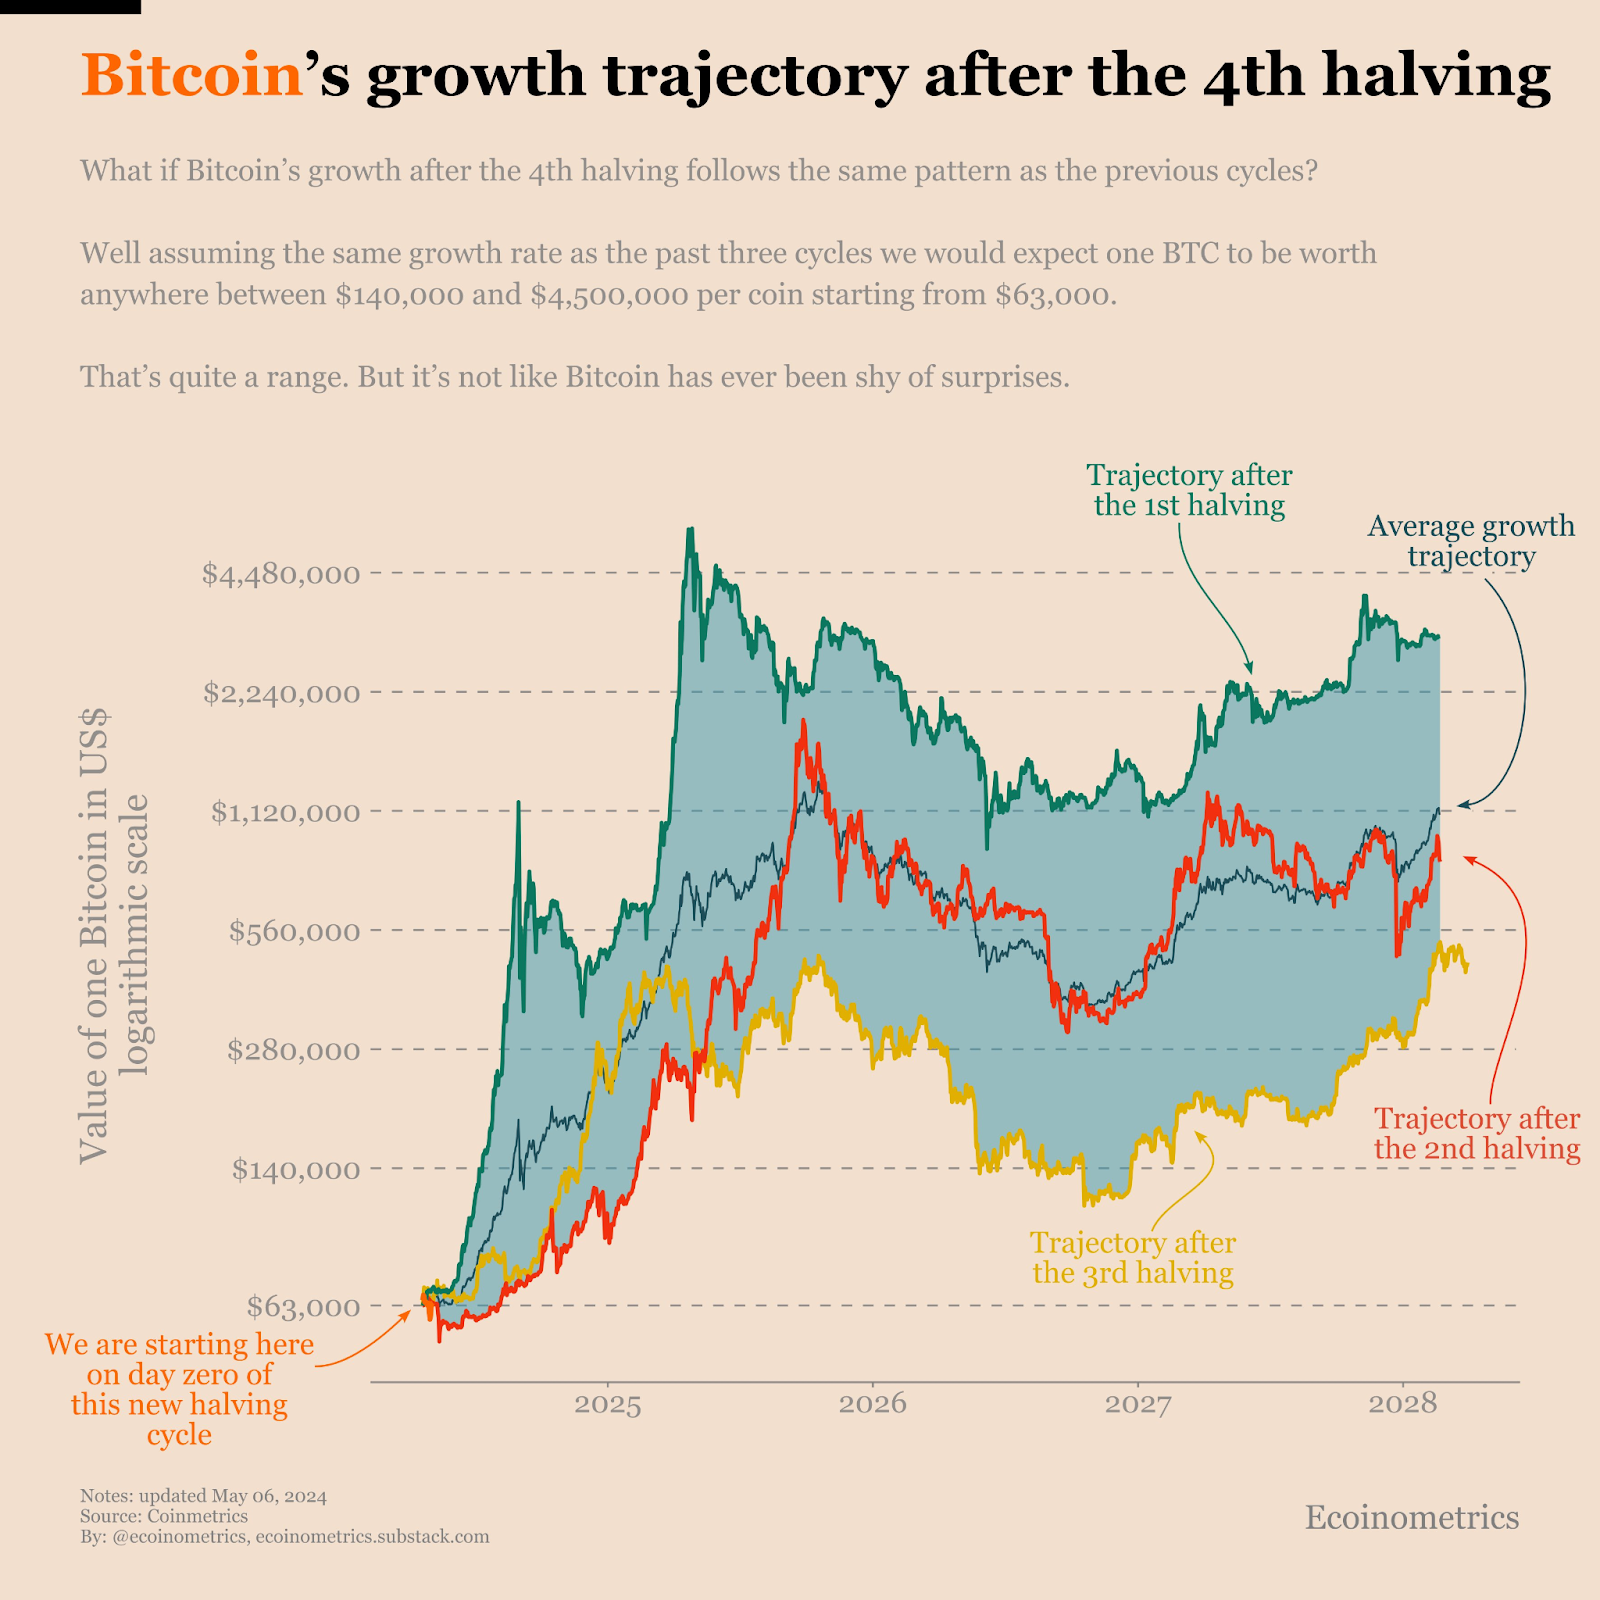 El análisis de Ecoinometrics sugiere que nos encontramos justo al principio del aumento del ciclo de reducción a la mitad del bitcoin.